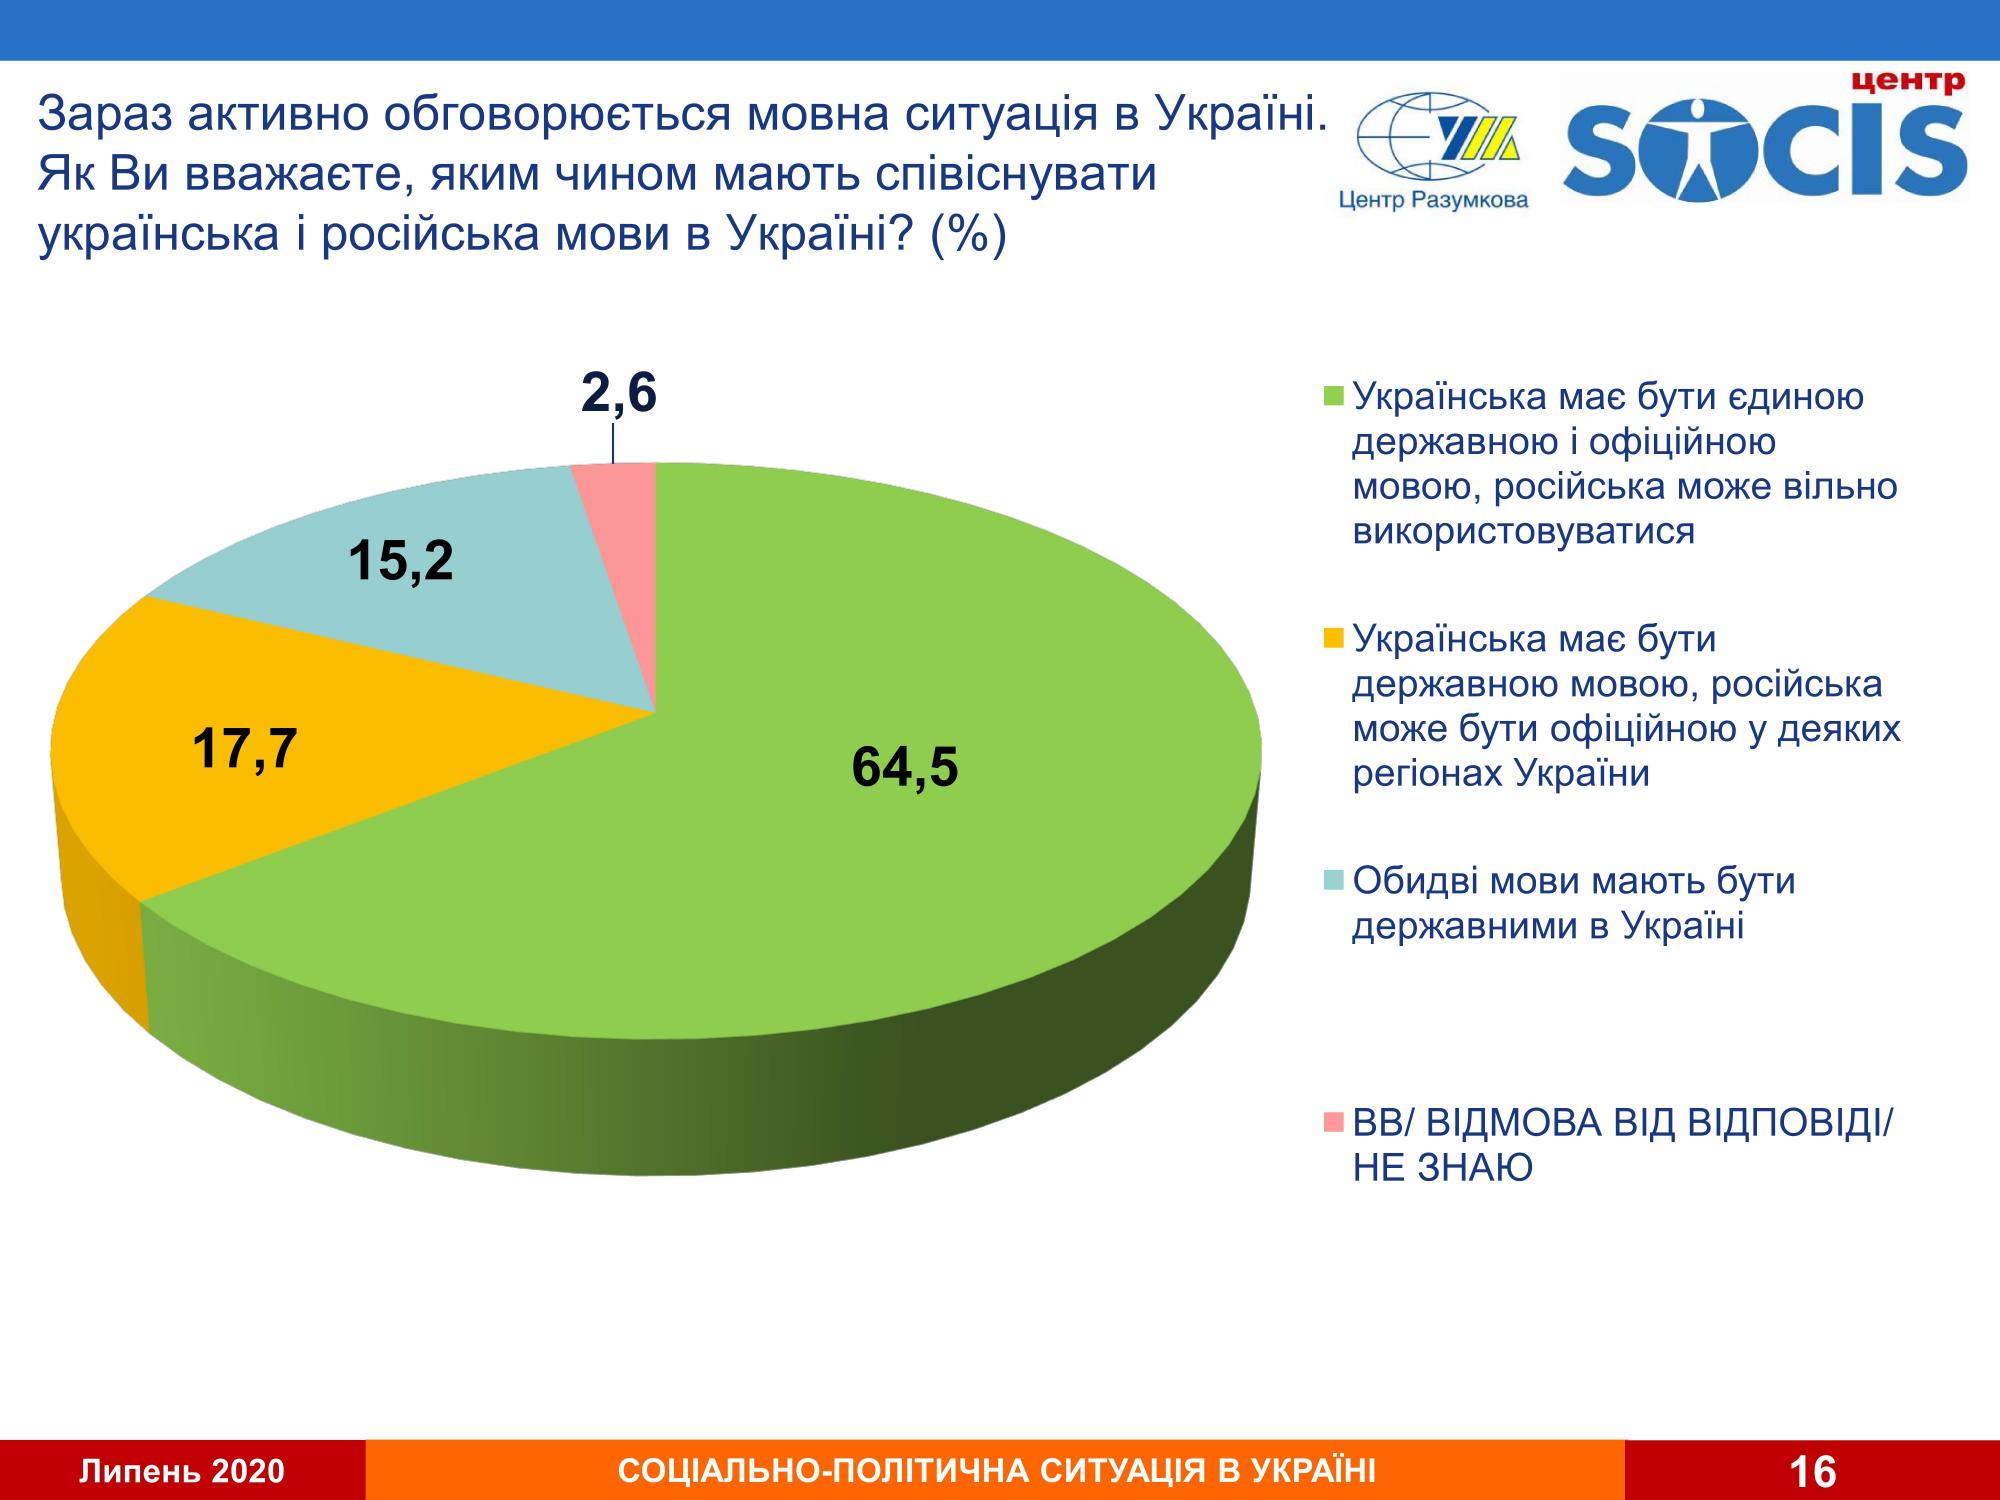 Абсолютное большинство украинцев выступают за единственный государственный язык